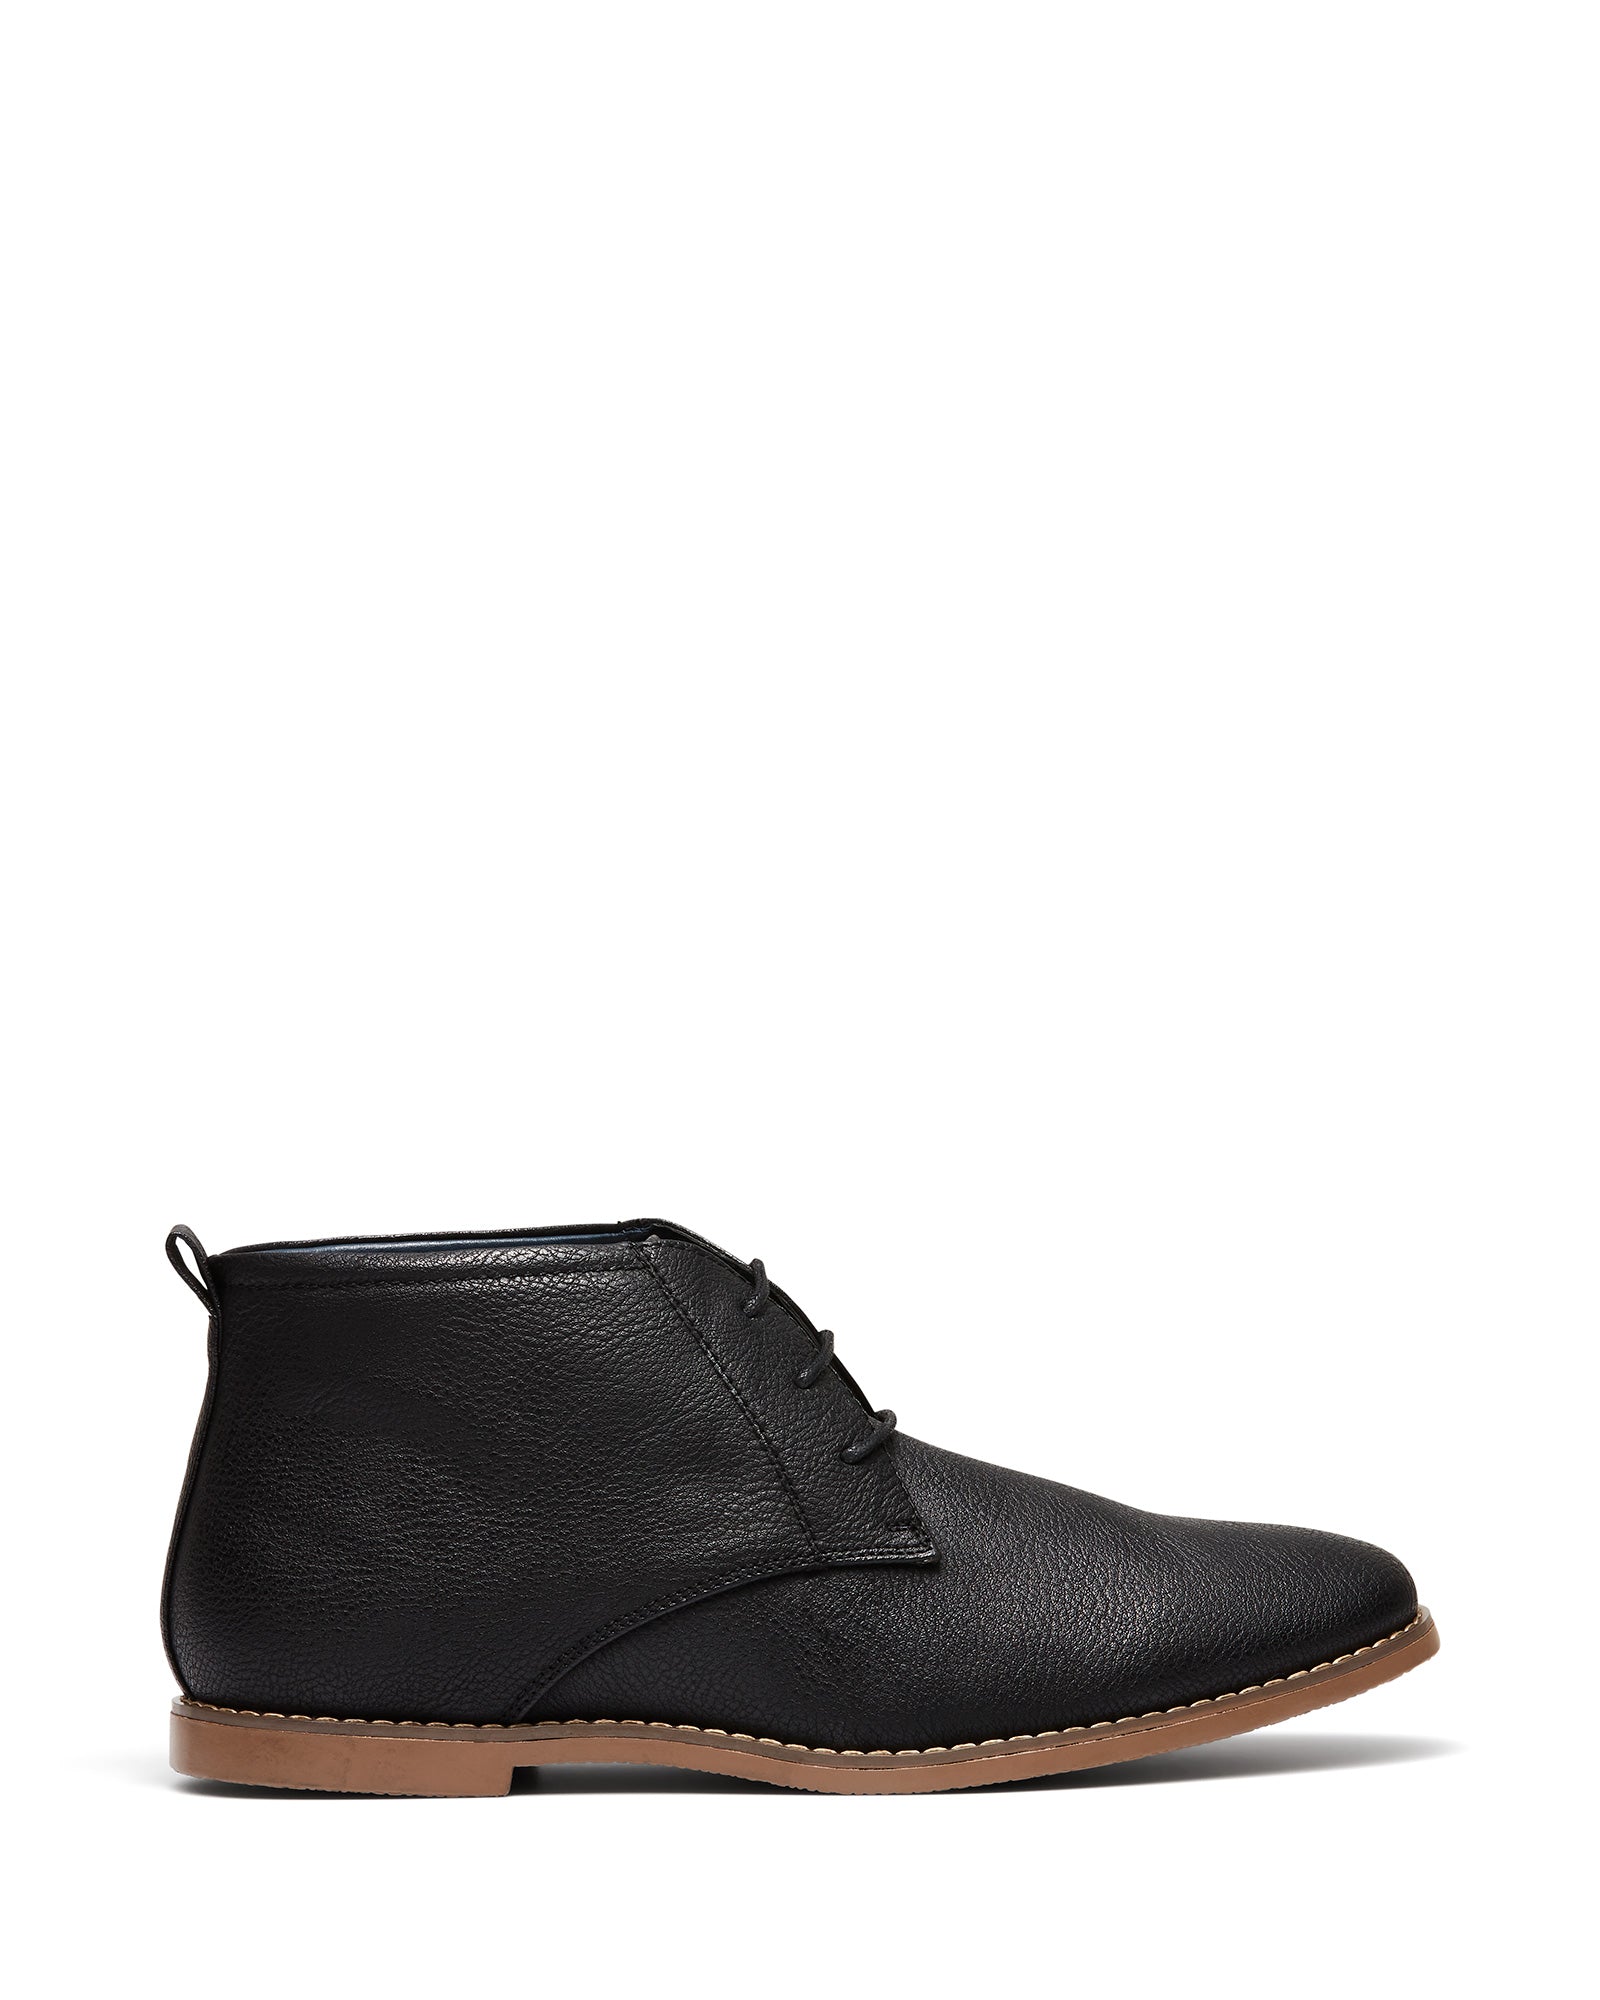 Uncut Shoes Moray Black | Men's Boot | Desert Boot | Lace Up | Dress